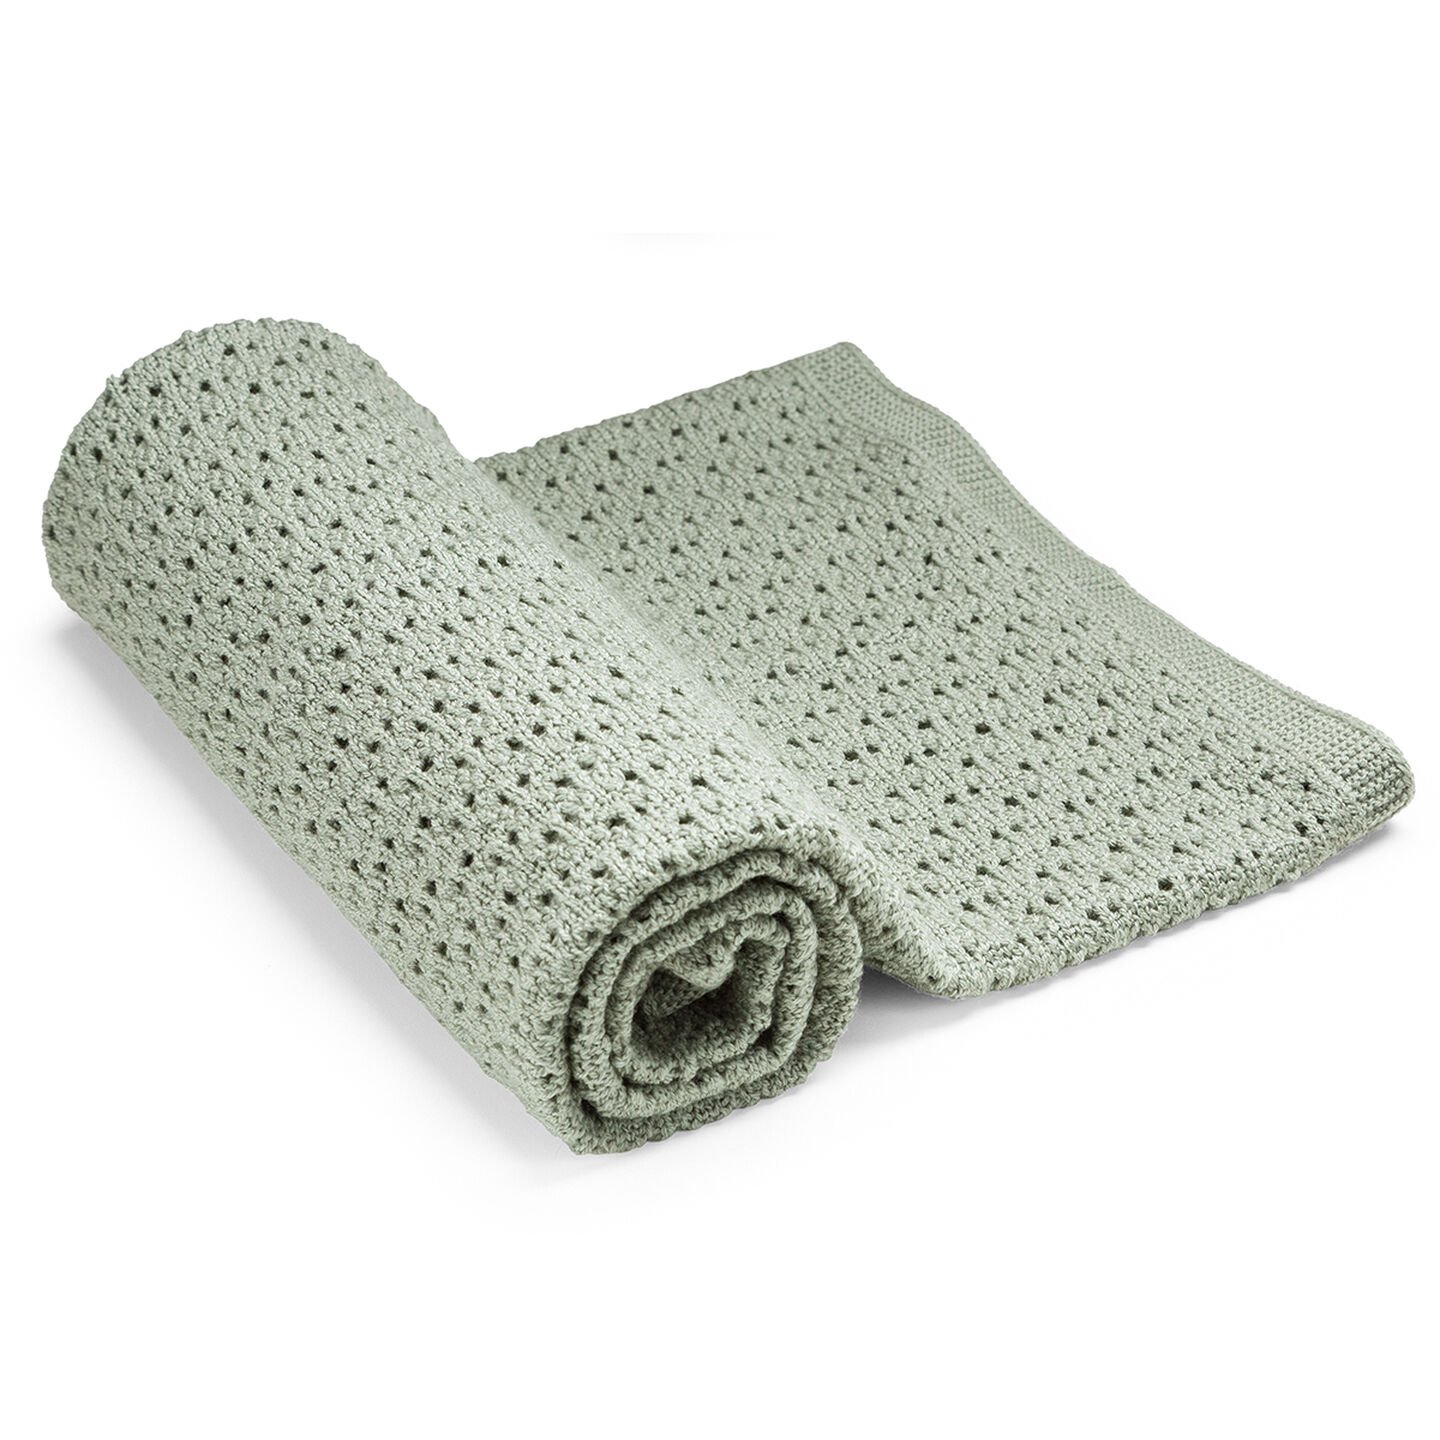 Stokke® Blanket Merino Wool Green, 綠色, mainview view 1